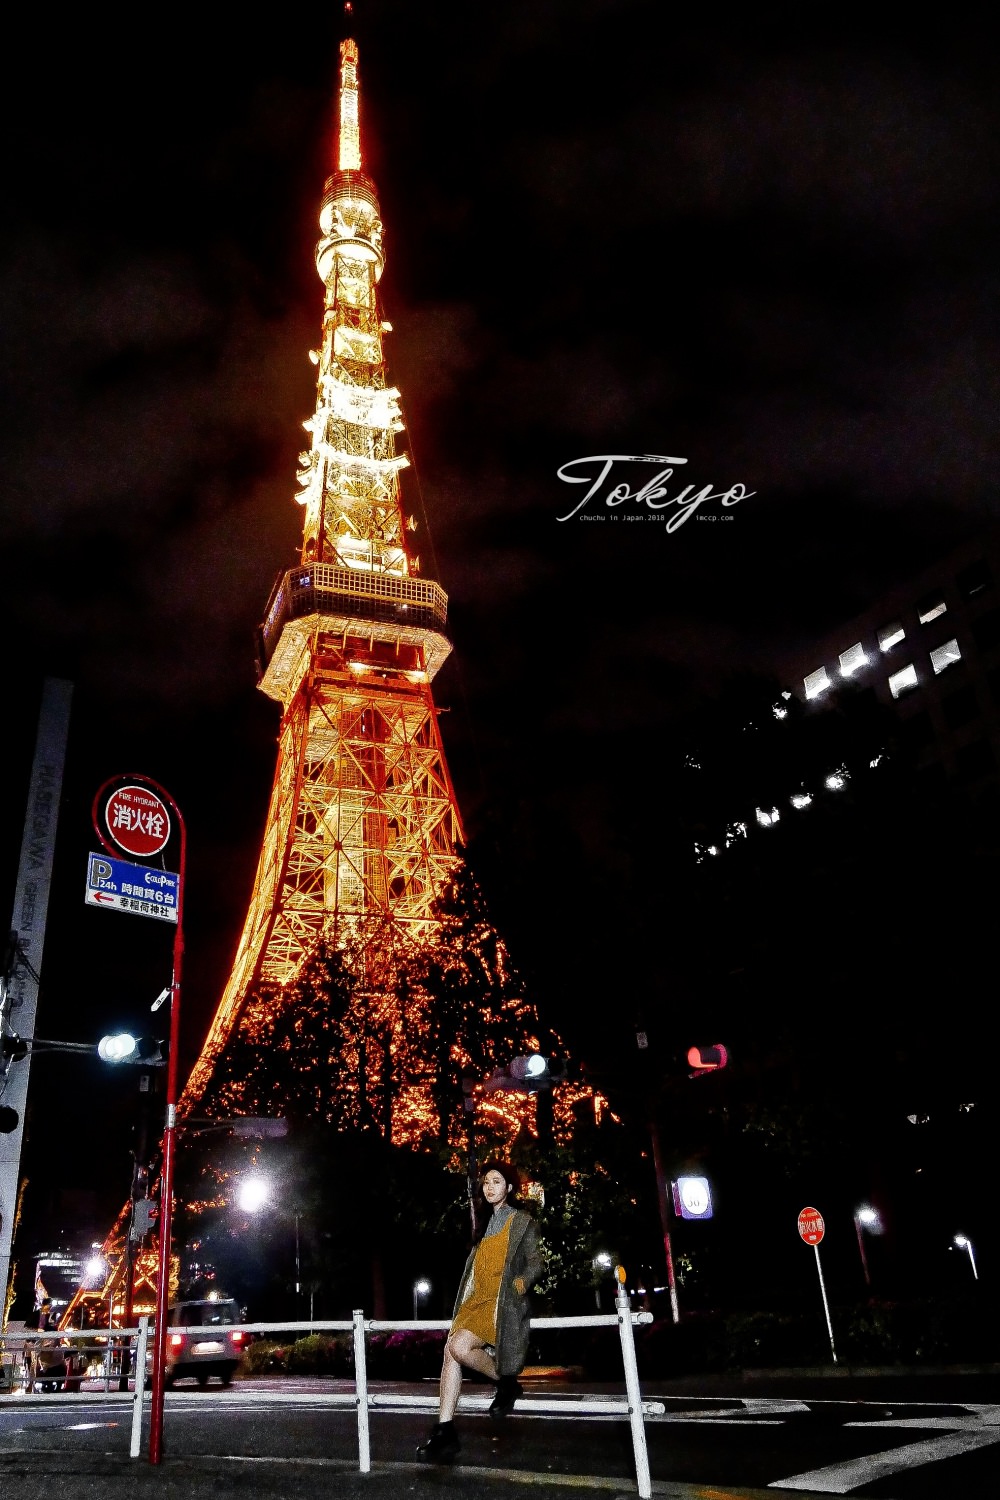 東京自由行,東京鐵塔,東京夜景,東京晚上去哪,東京鐵塔拍照推薦